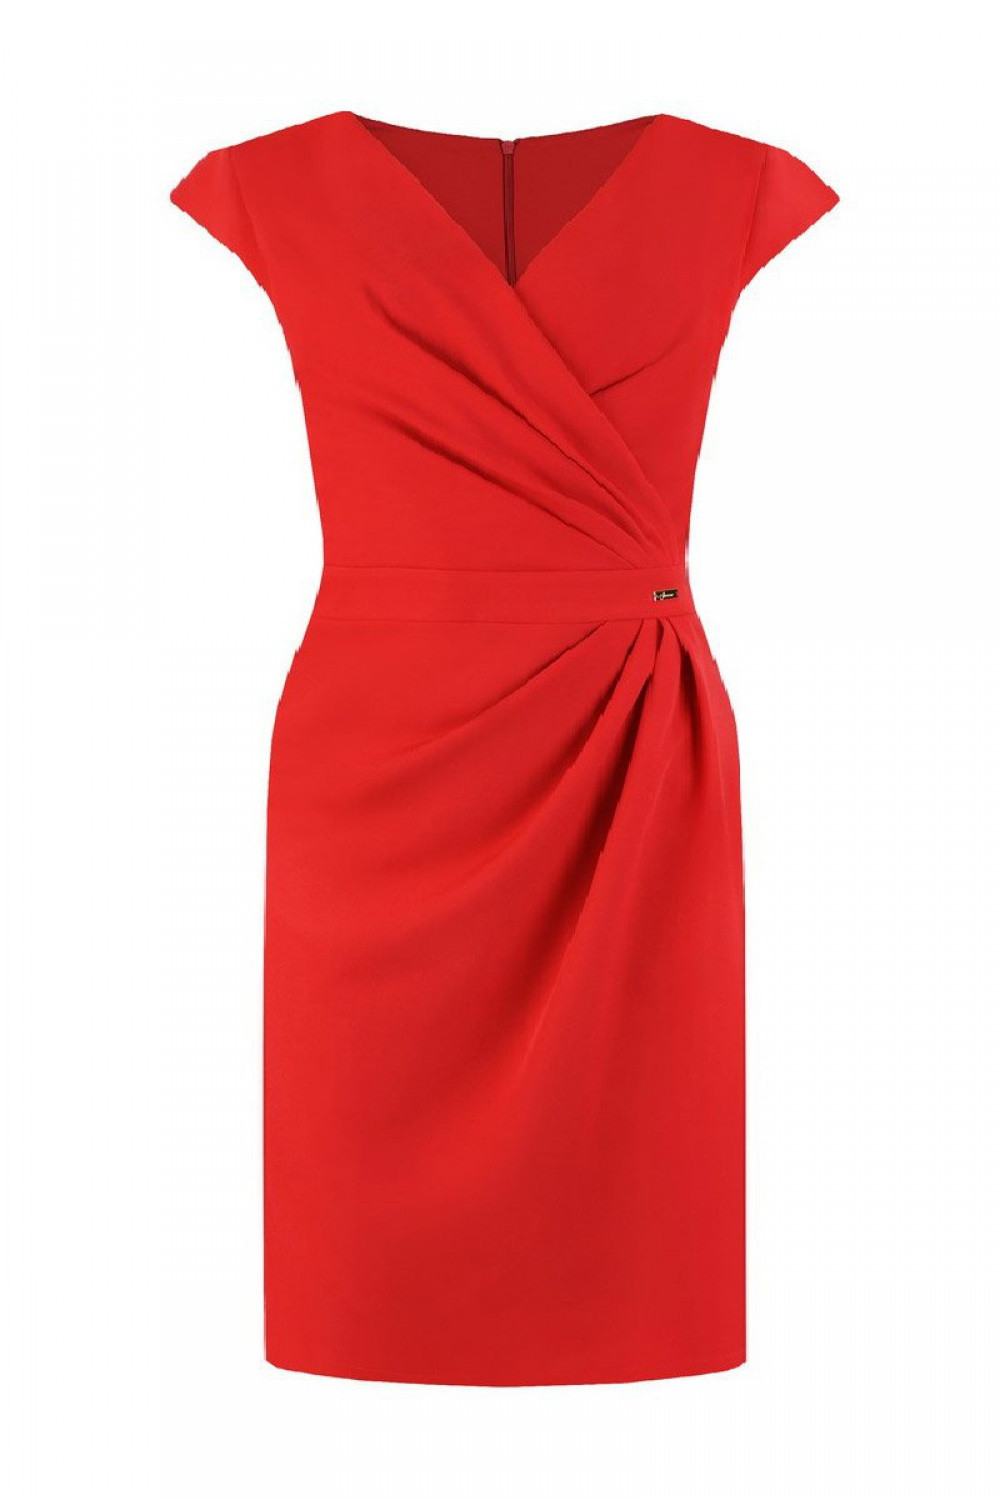 Dámské šaty model 15610172 červená 46 - Jersa